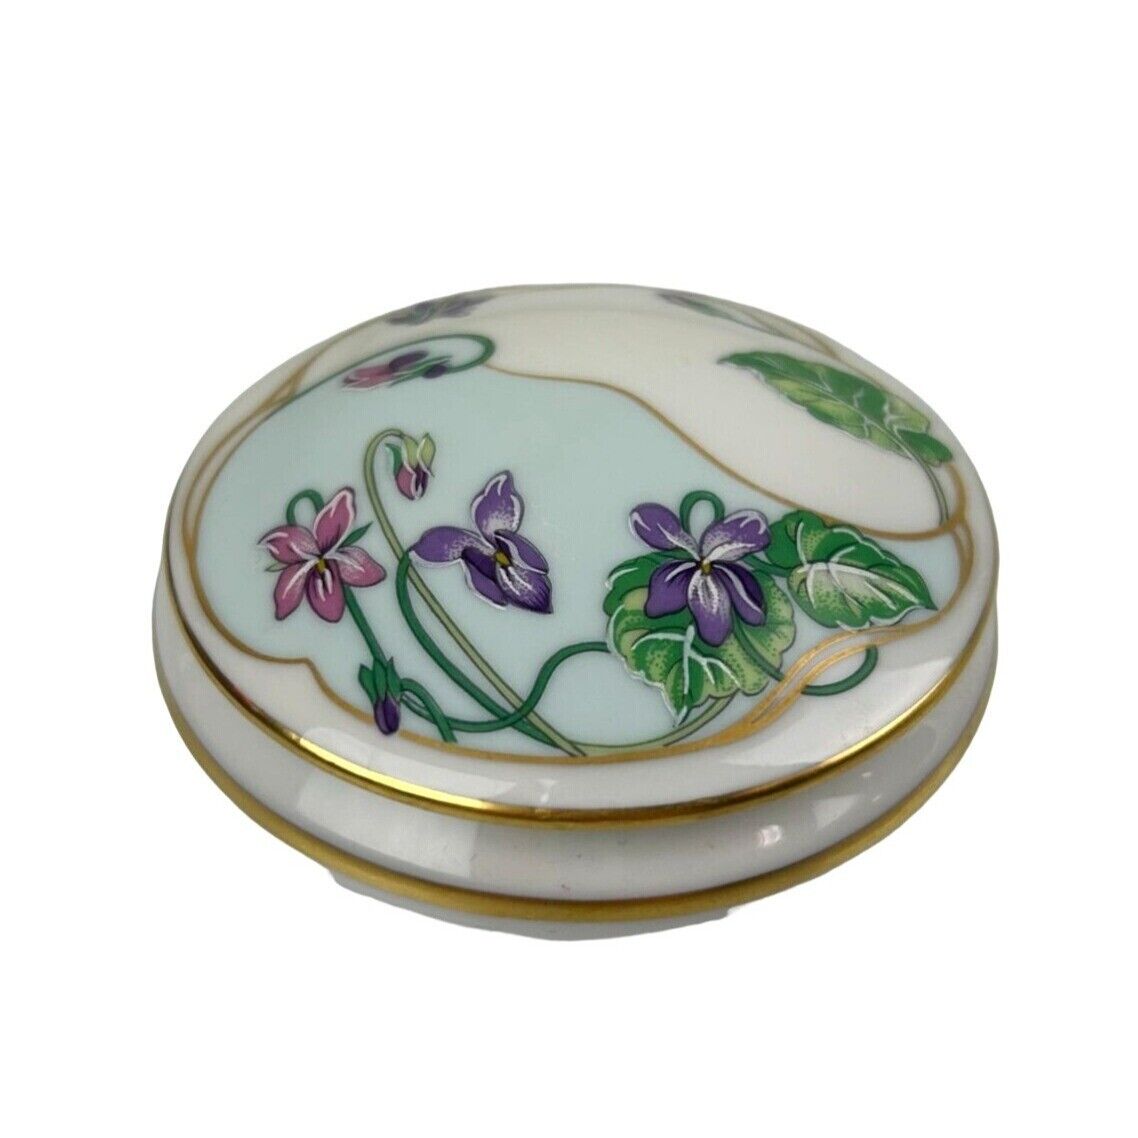 Vintage Limoges Castel France Porcelain Trinket Box, Purple Floral Hand Painted